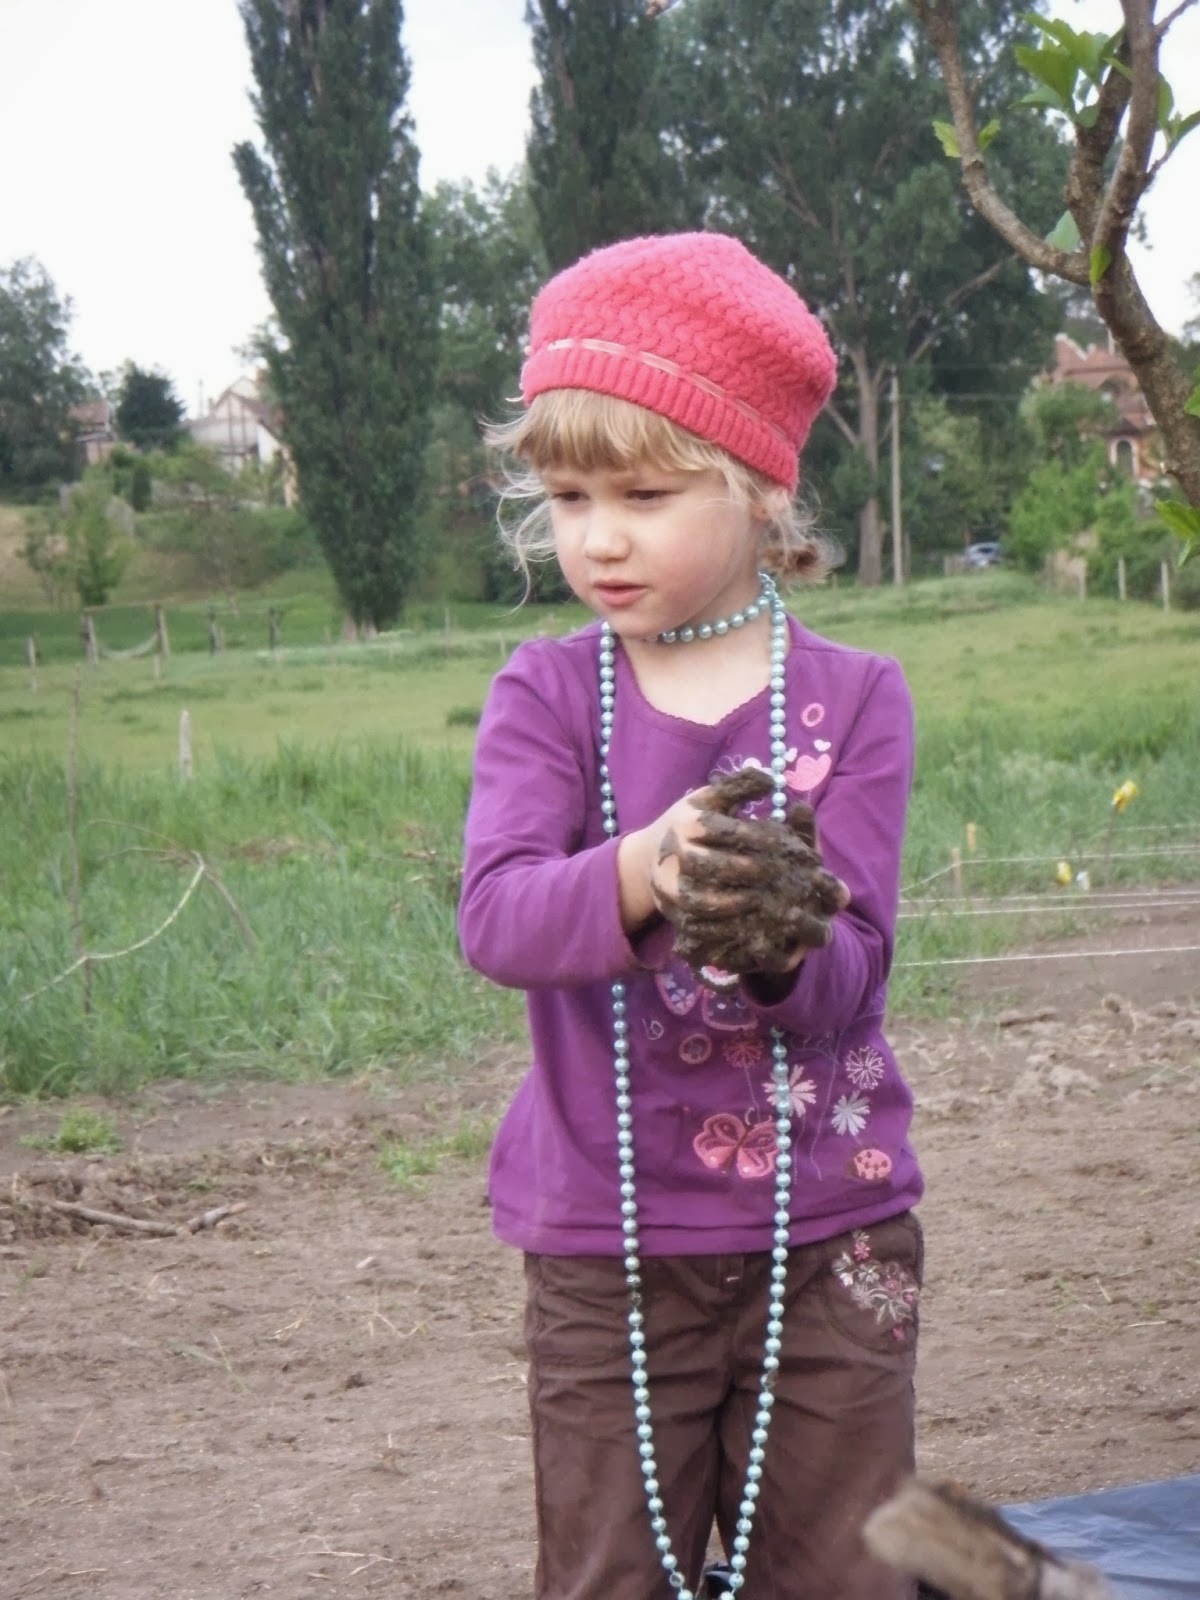 Dunakeszi közösségi kert - Dunakert: biozöldség - gyerekkel, családdal, együtt